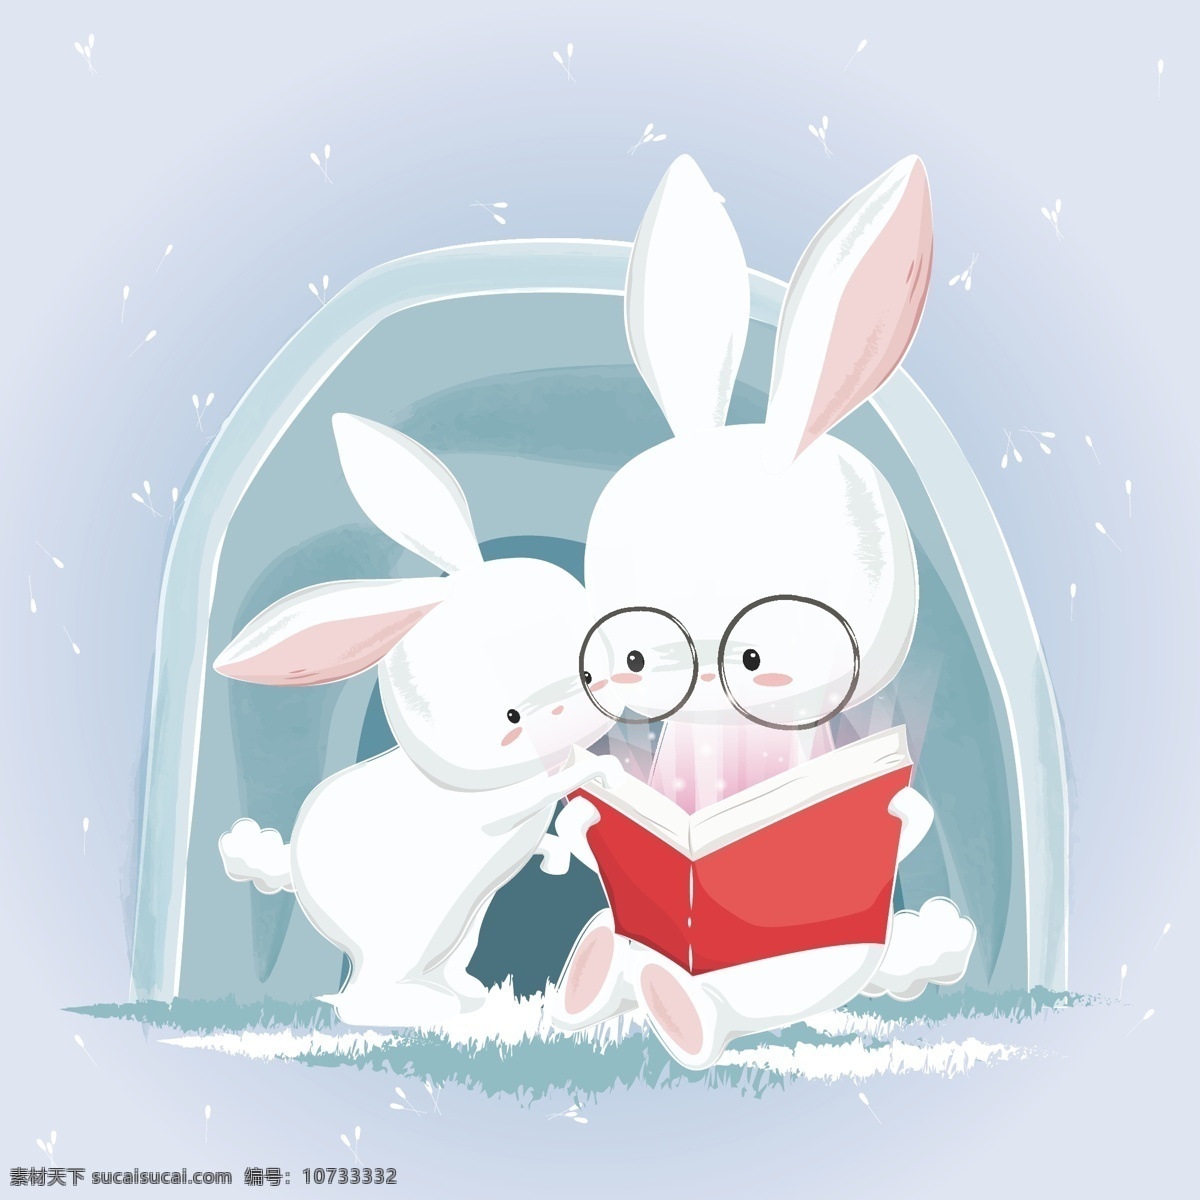 认真 看书 小白 兔子 手绘可爱小兔 治愈系小兔子 可爱小兔子 手绘花束 手绘水壶 卡通兔子 粉色小兔子 小兔子 手绘兔子 卡通动漫 动漫动画